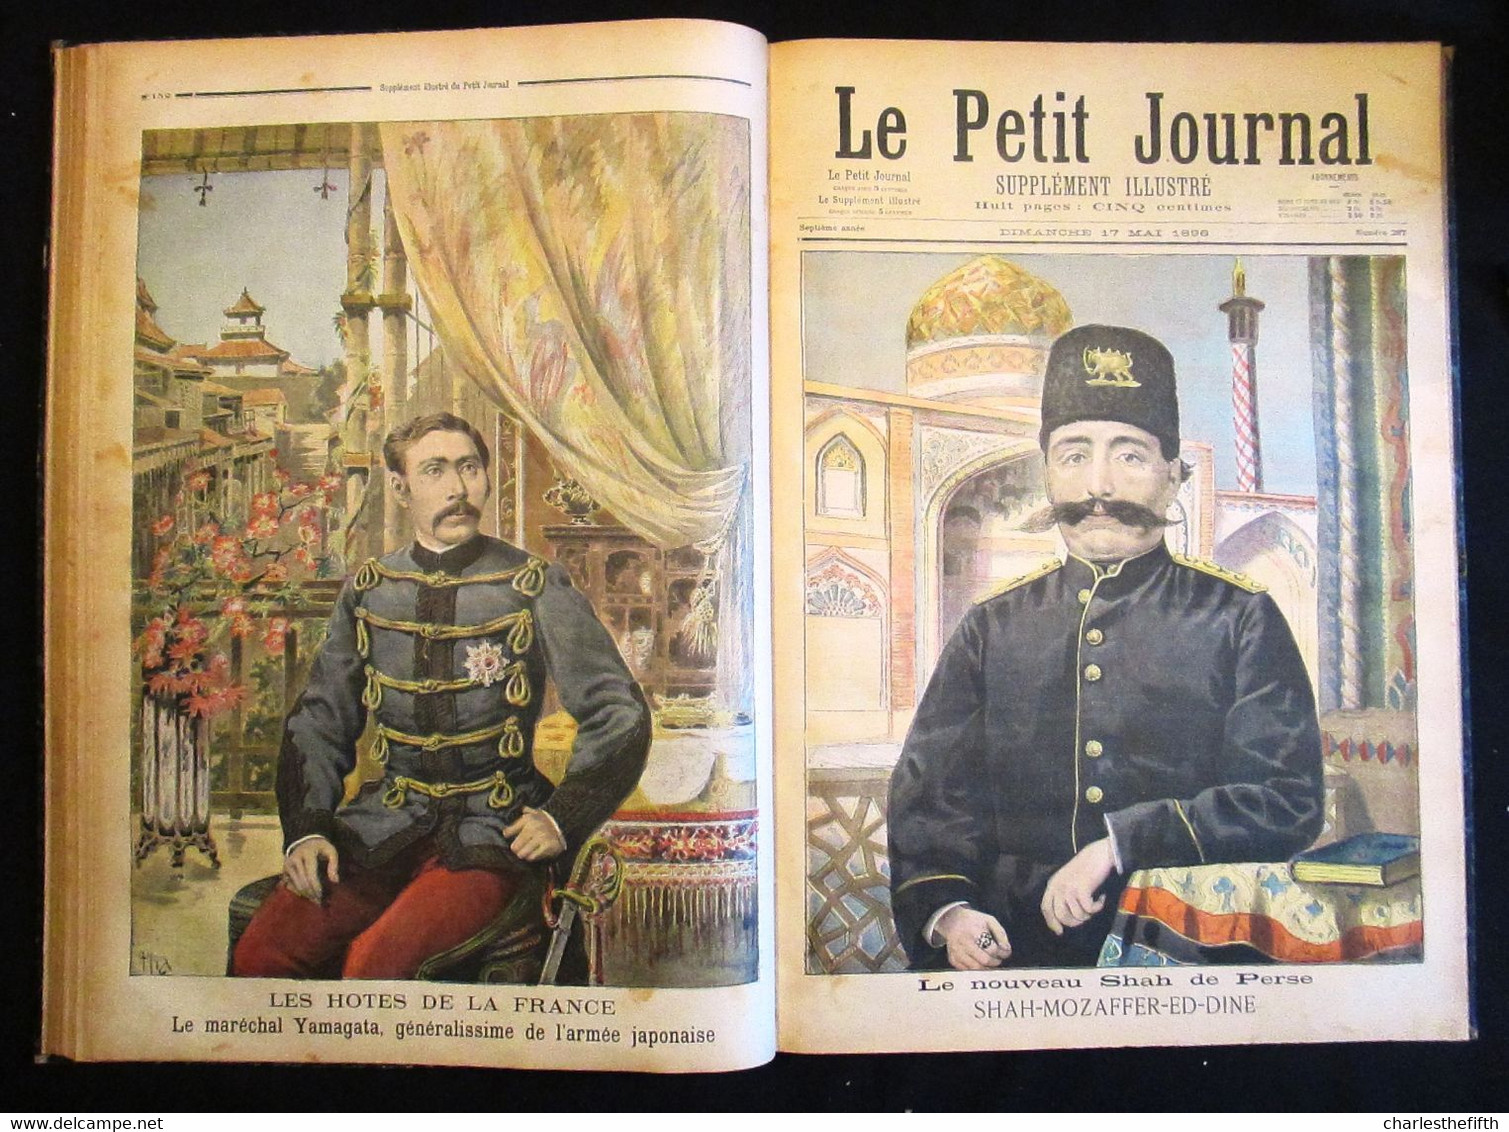 SUPERBE RELIURE ** Le petit journal illustré 1896 ** COMPLET - Li Hung-Chang CHINE - Russie - shah de Perse - Tsar -